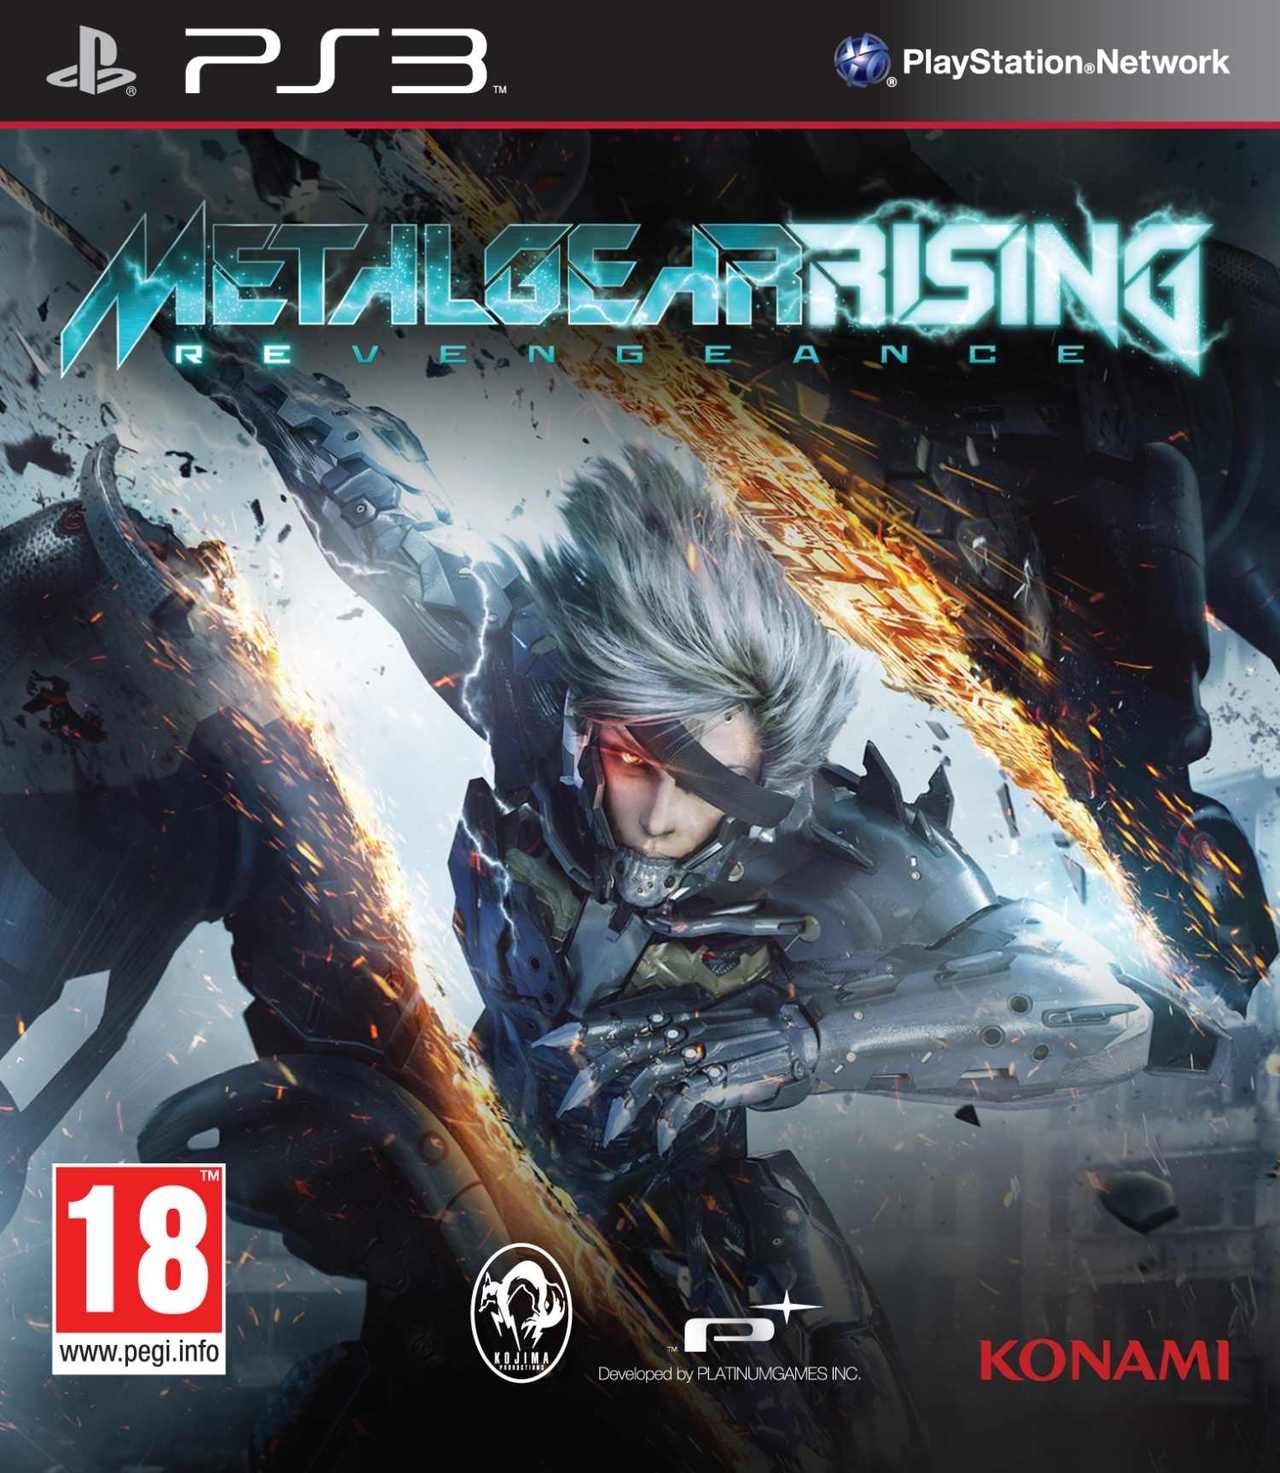 Caratula de Metal Gear Rising: Revengeance para PlayStation 3